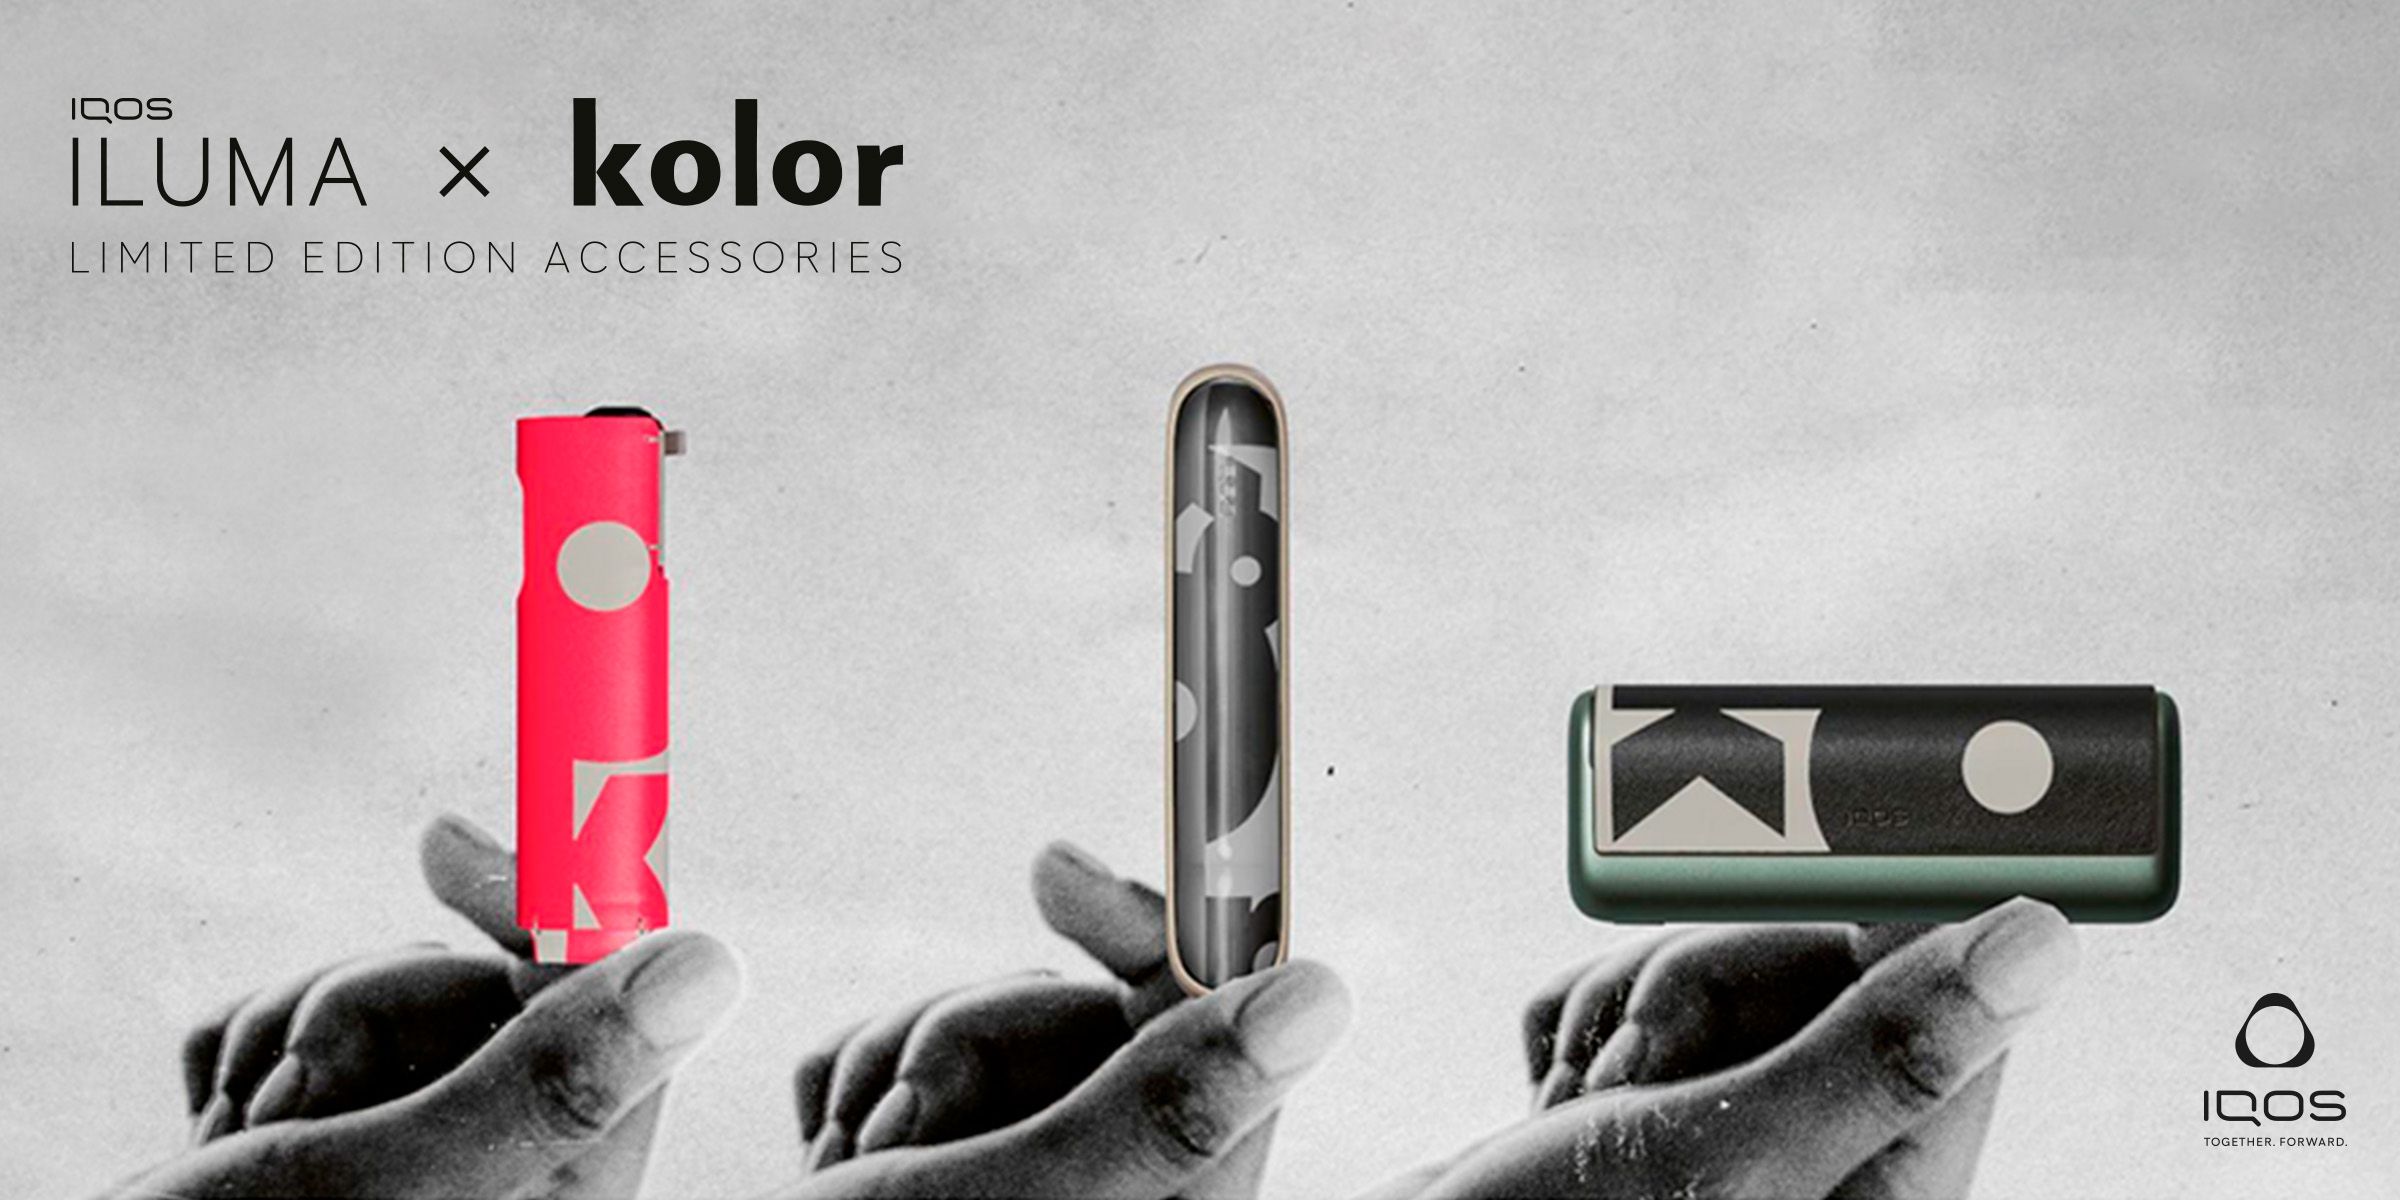 Tre dispositivi IQOS ILUMA con le varie versioni degli accessori Kolor in edizione limitata